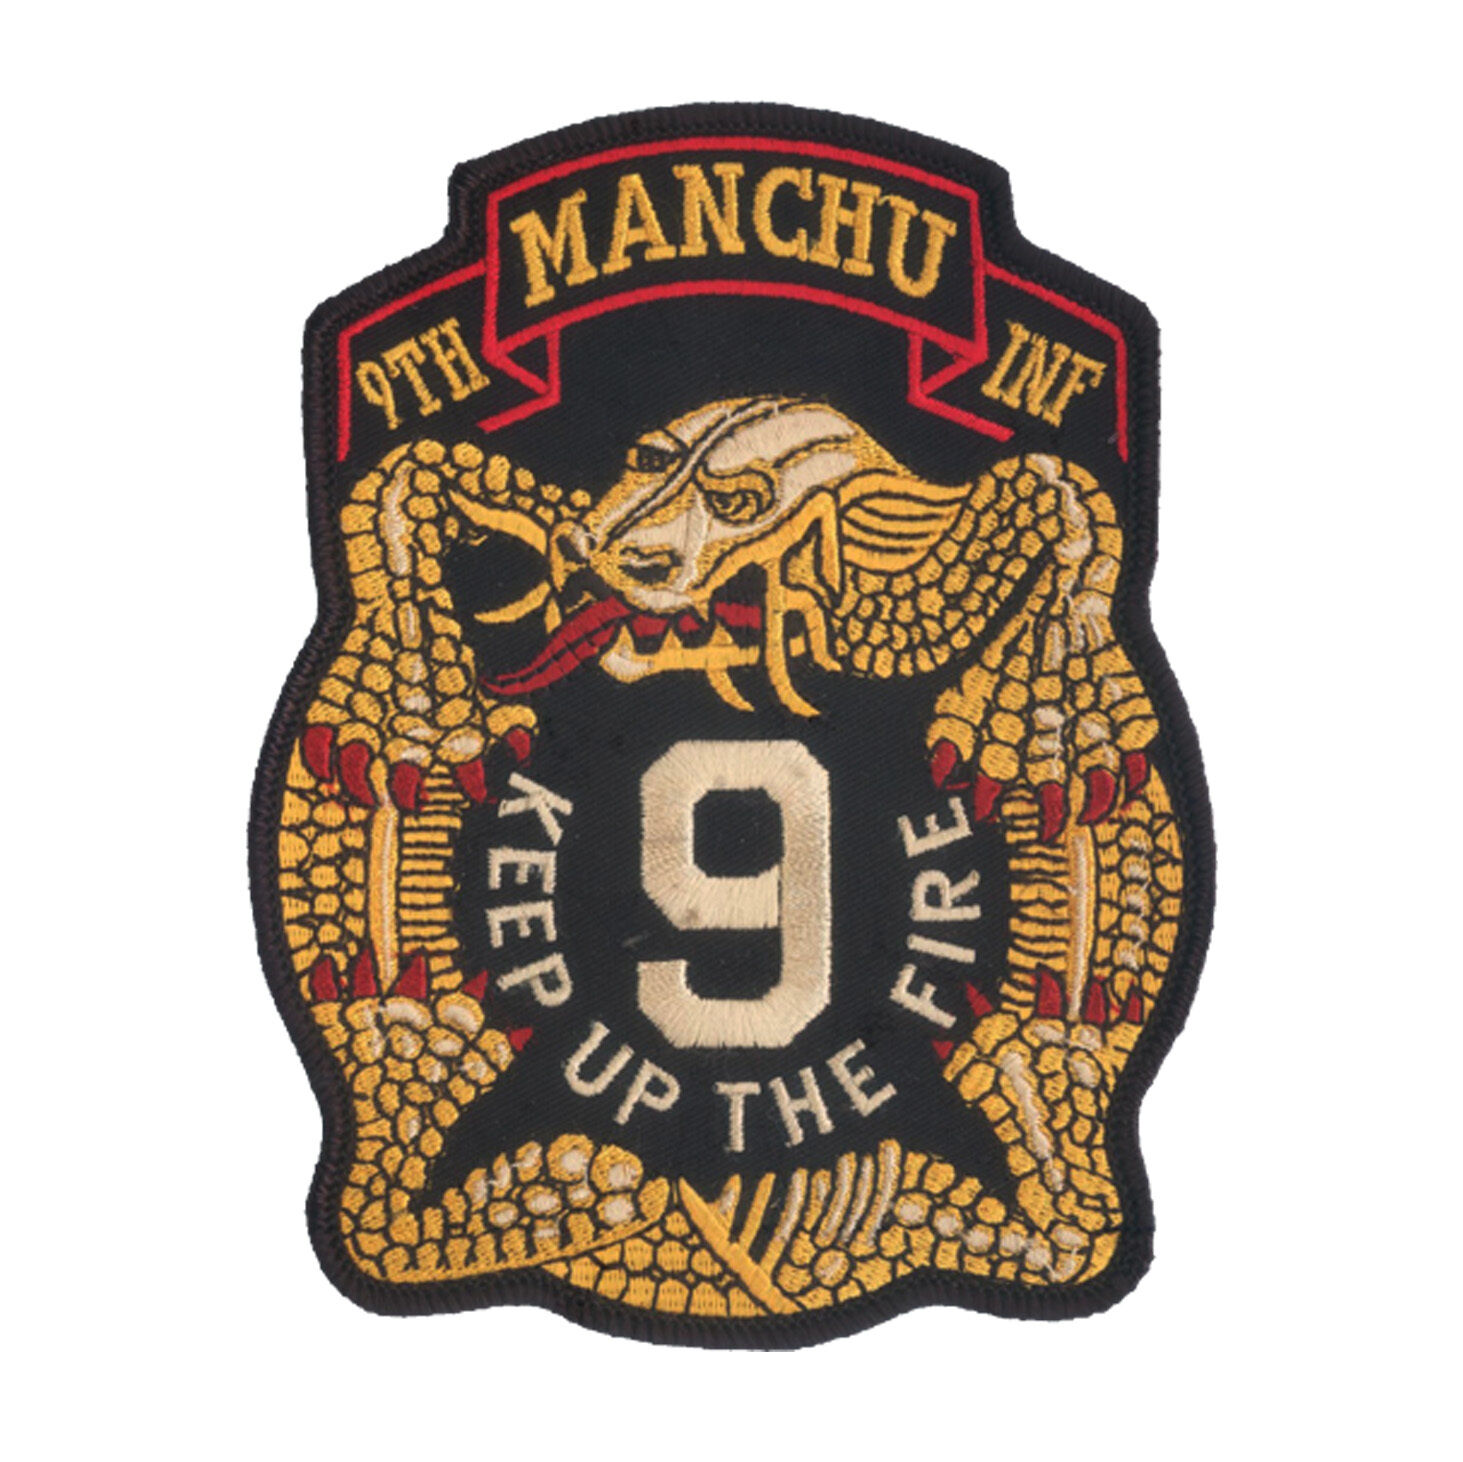 9th Infantry Regiment HUGE Embroidered Back Patch - Manchu - Infantry US Ranger